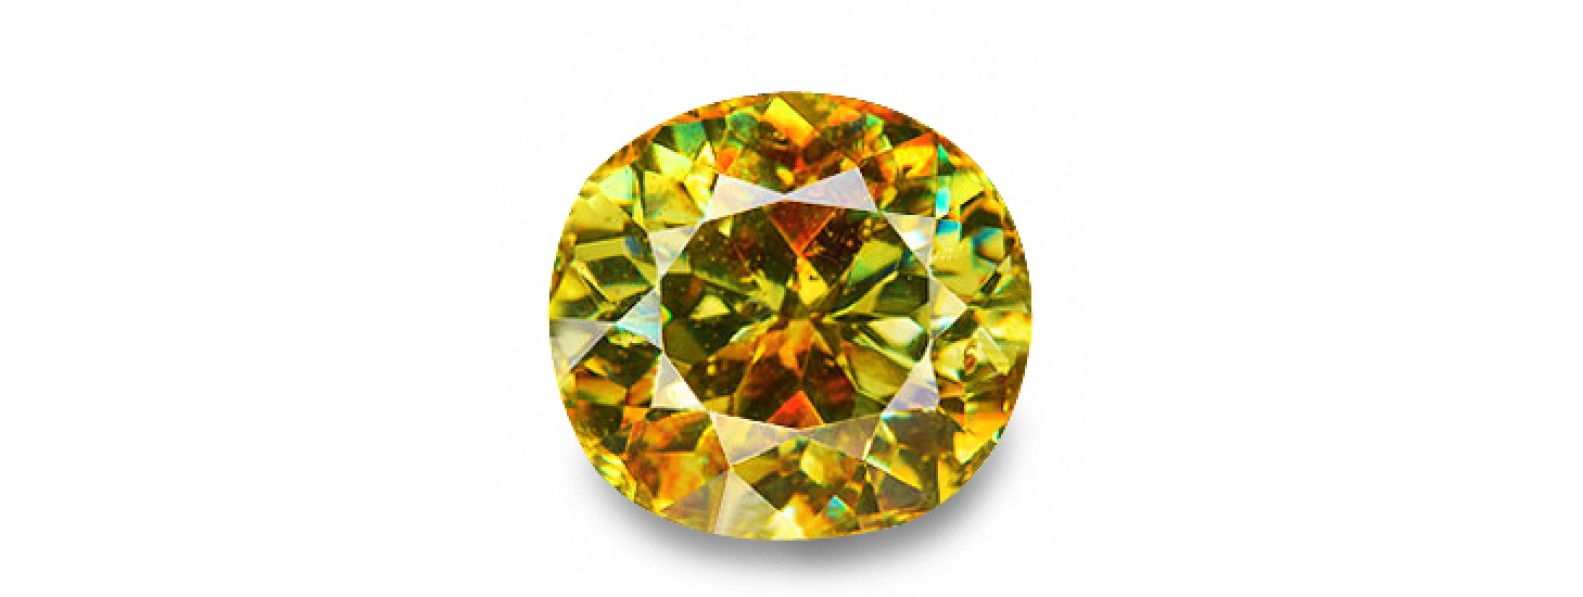 Natural Blue Sphalerite Gemstones Online | Buy Sphalerite Gemstone Online at Best Price - Gempiece